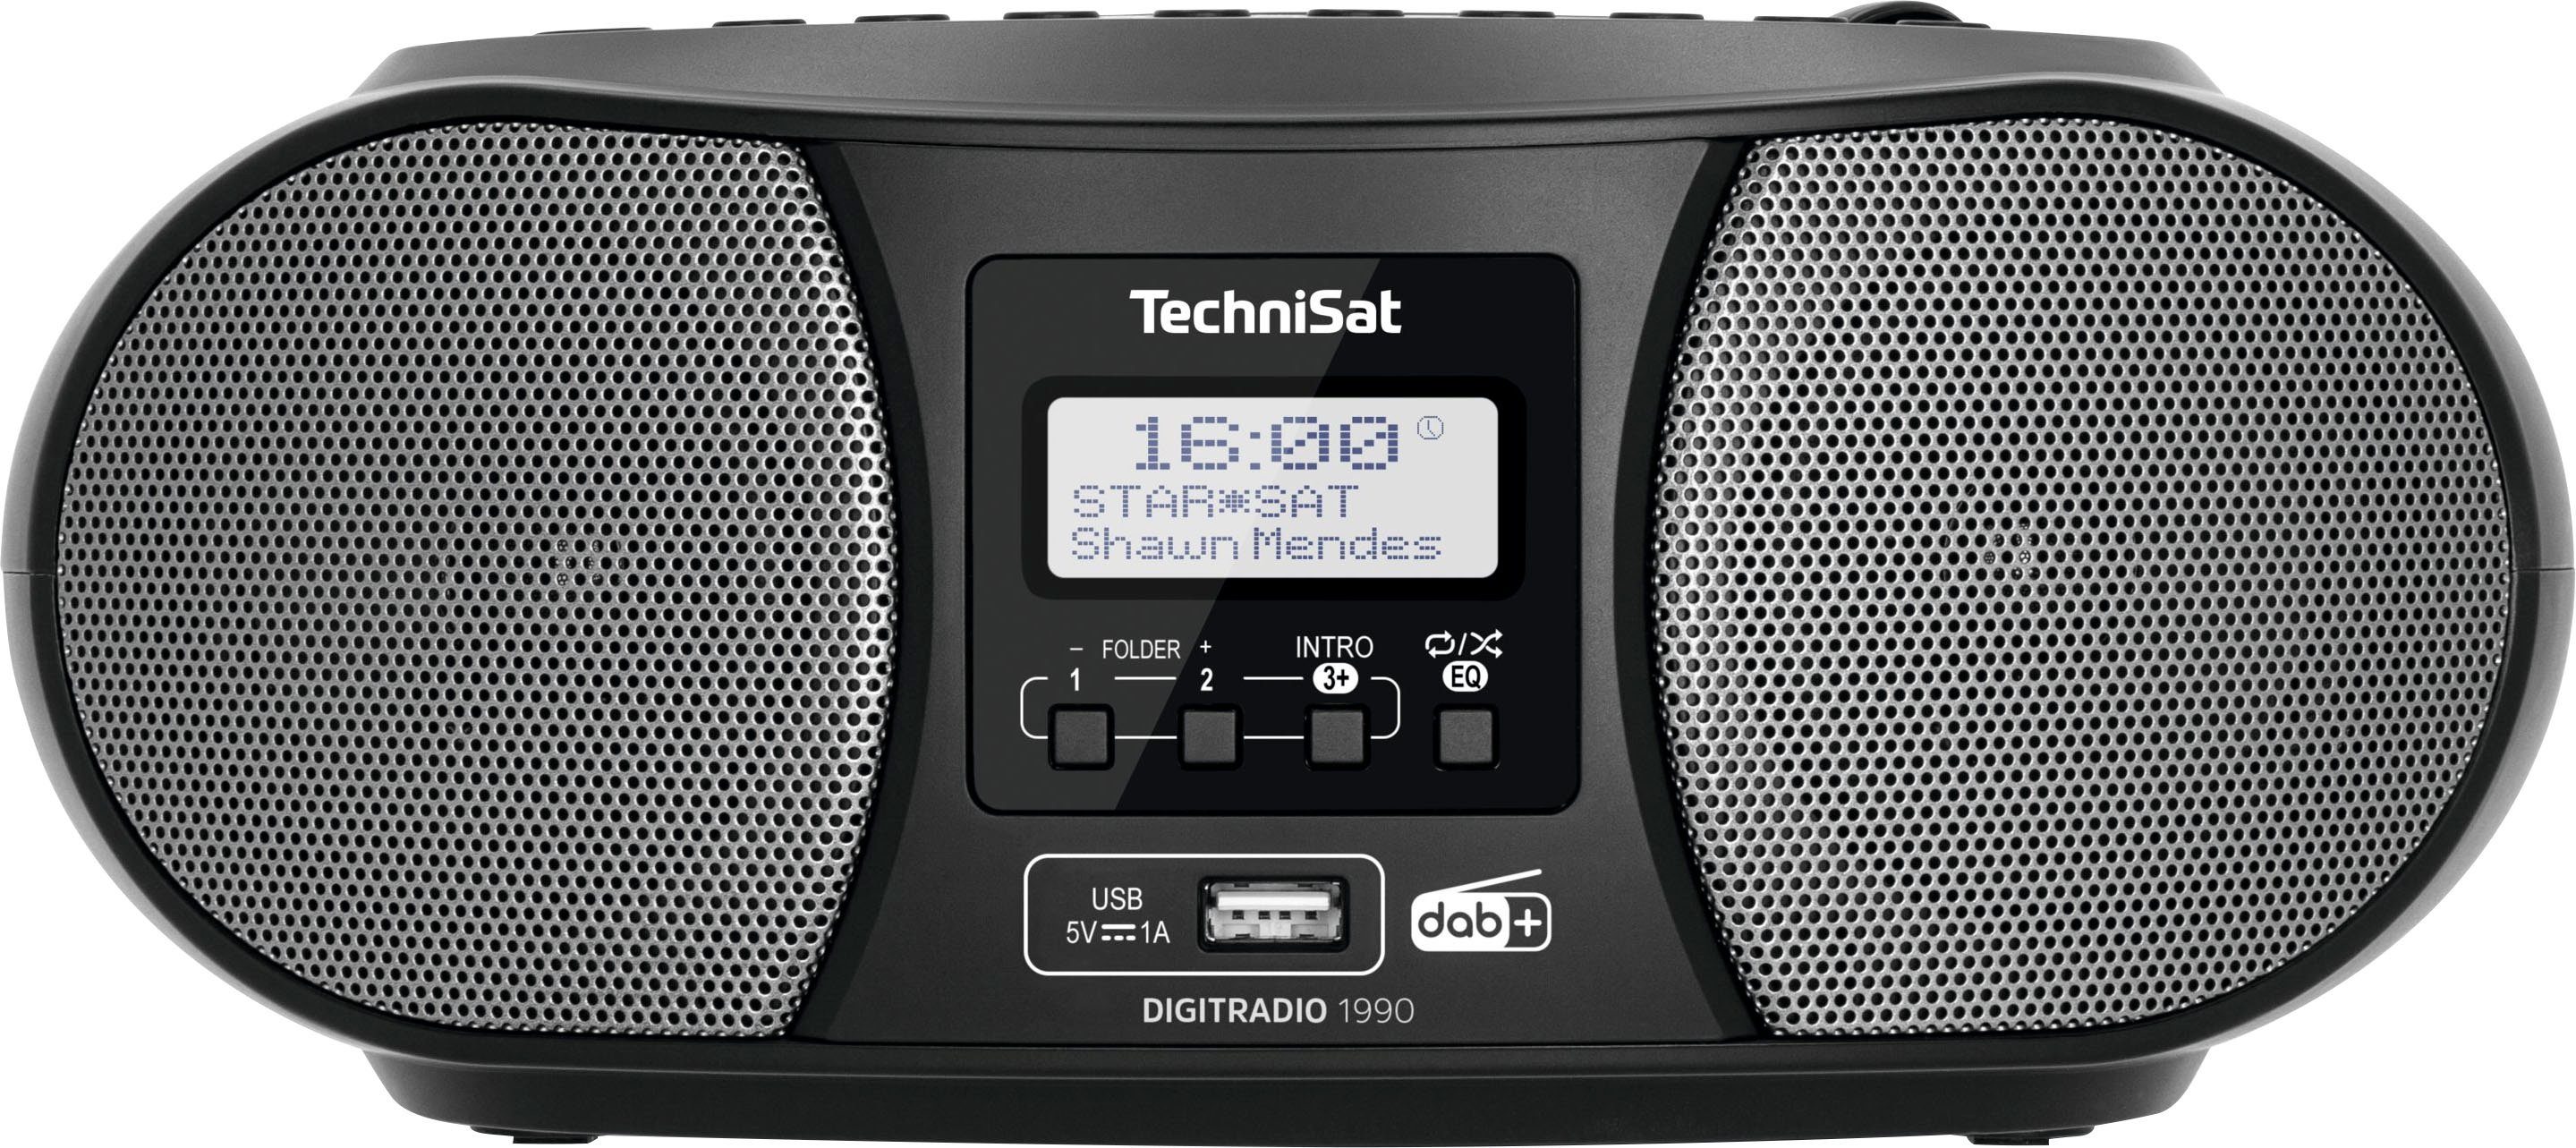 TechniSat Digitradio 1990 Stereo- Boombox (Digitalradio (DAB), FM-Tuner, mit DAB+, UKW, CD-Player, Bluetooth, USB, Batteriebetrieb möglich) schwarz | Radios